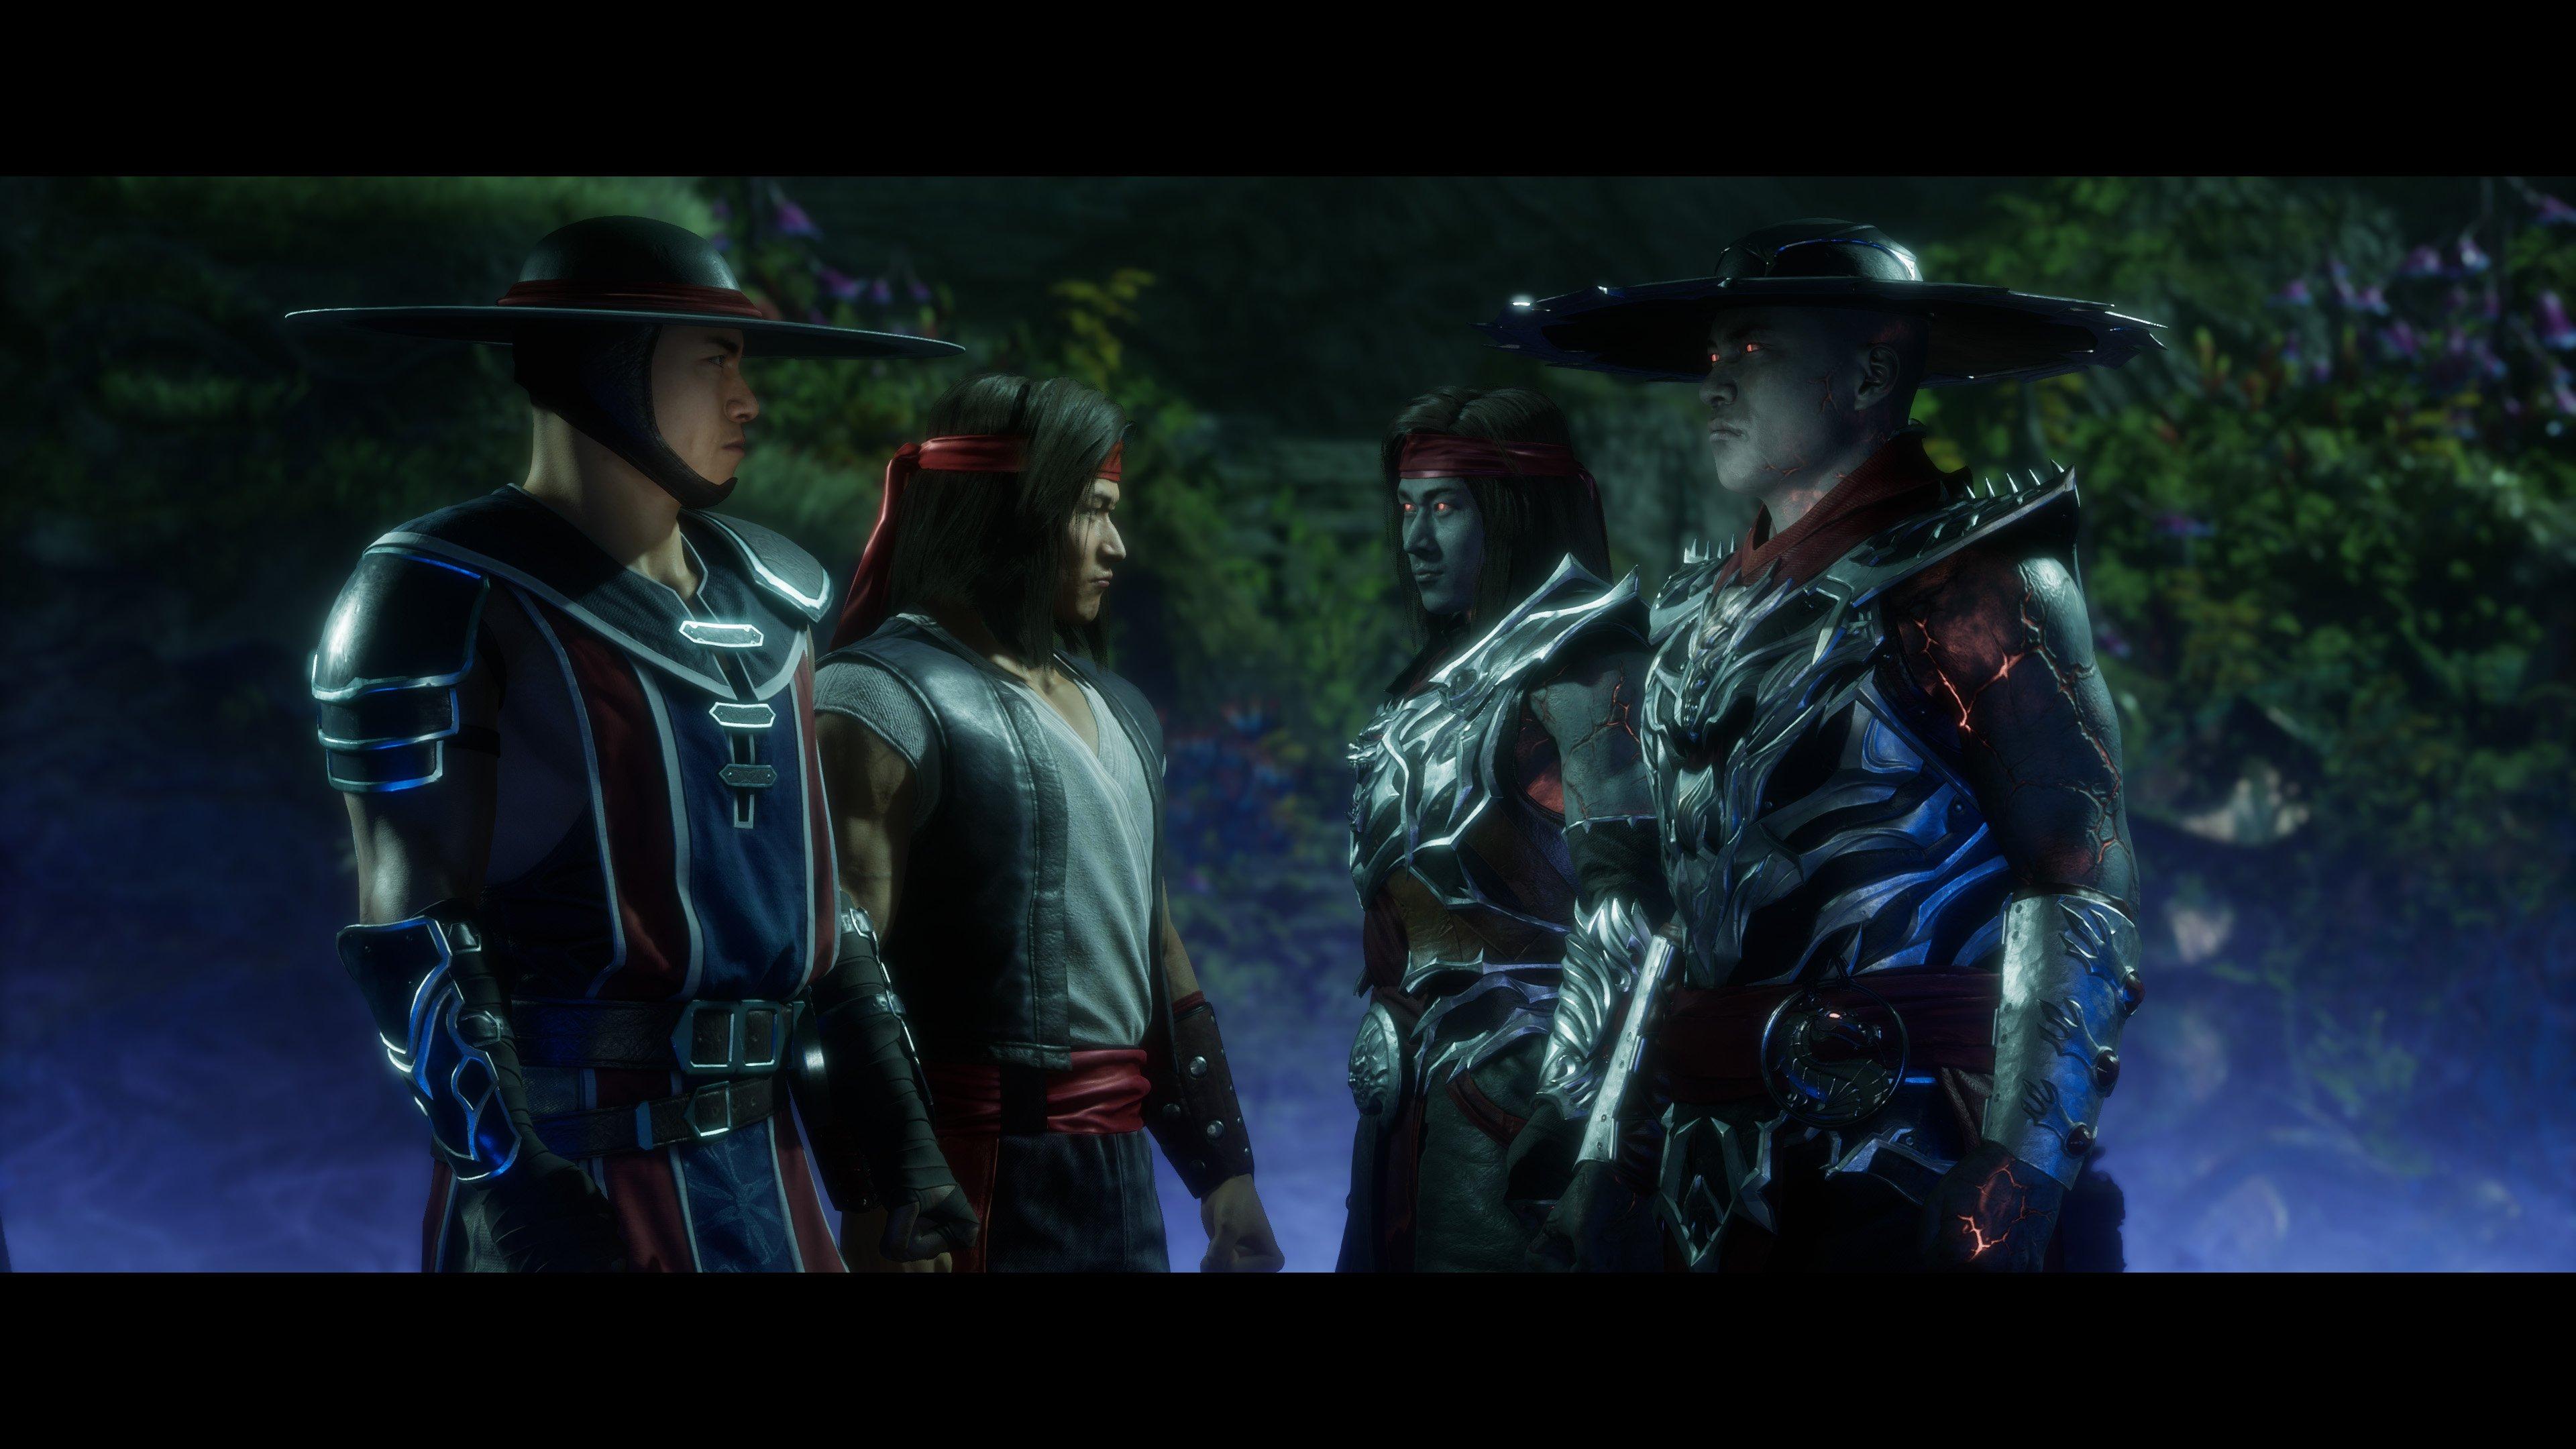 Mortal Kombat 11 Ultimate (PS5)